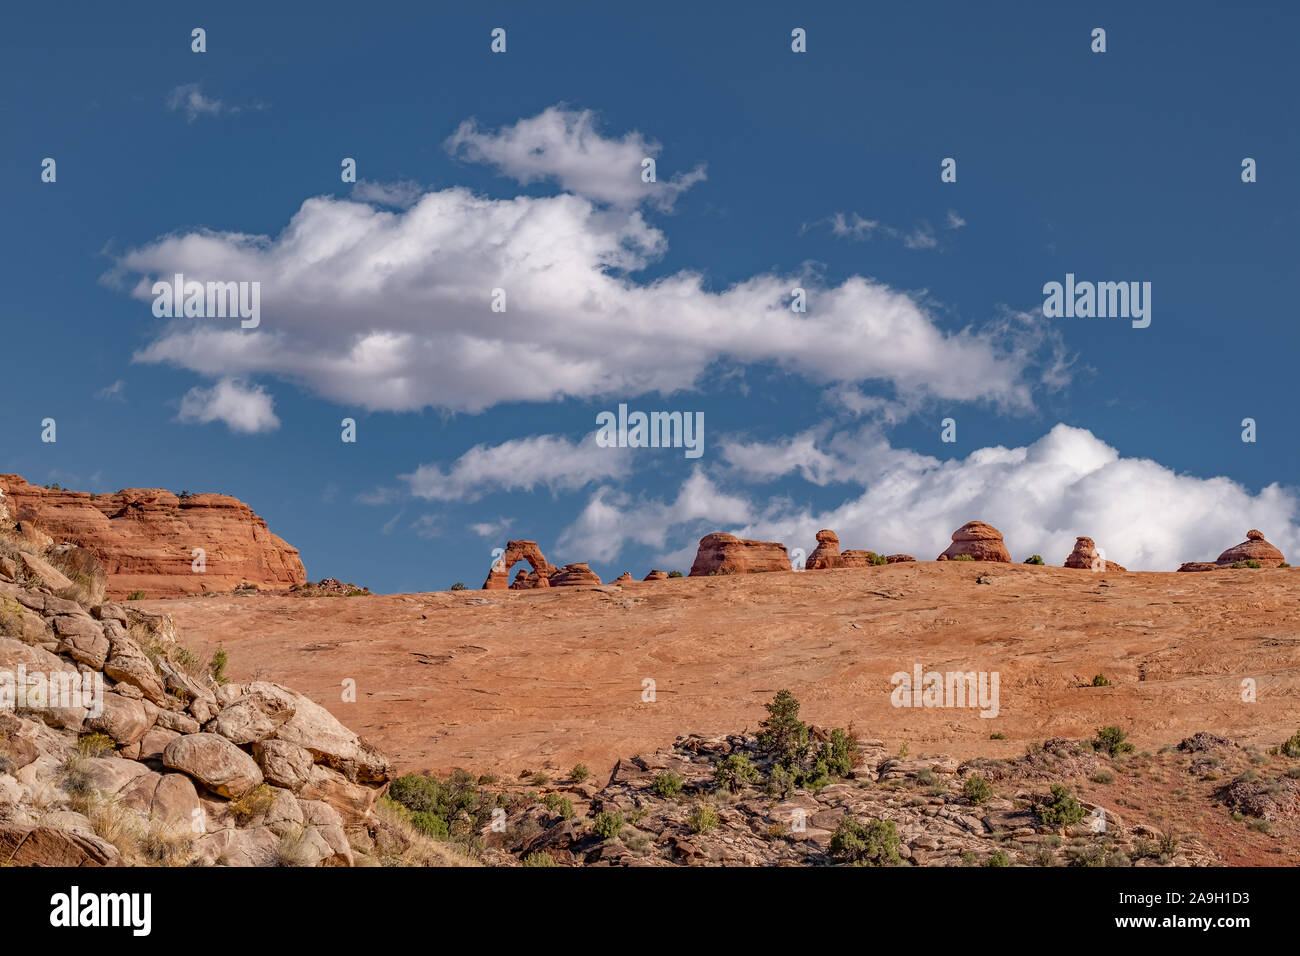 Formation de roches rouges contre un ciel bleu clair dans le parc national d'Arches, Utah. Attrait touristique aux États-Unis Banque D'Images